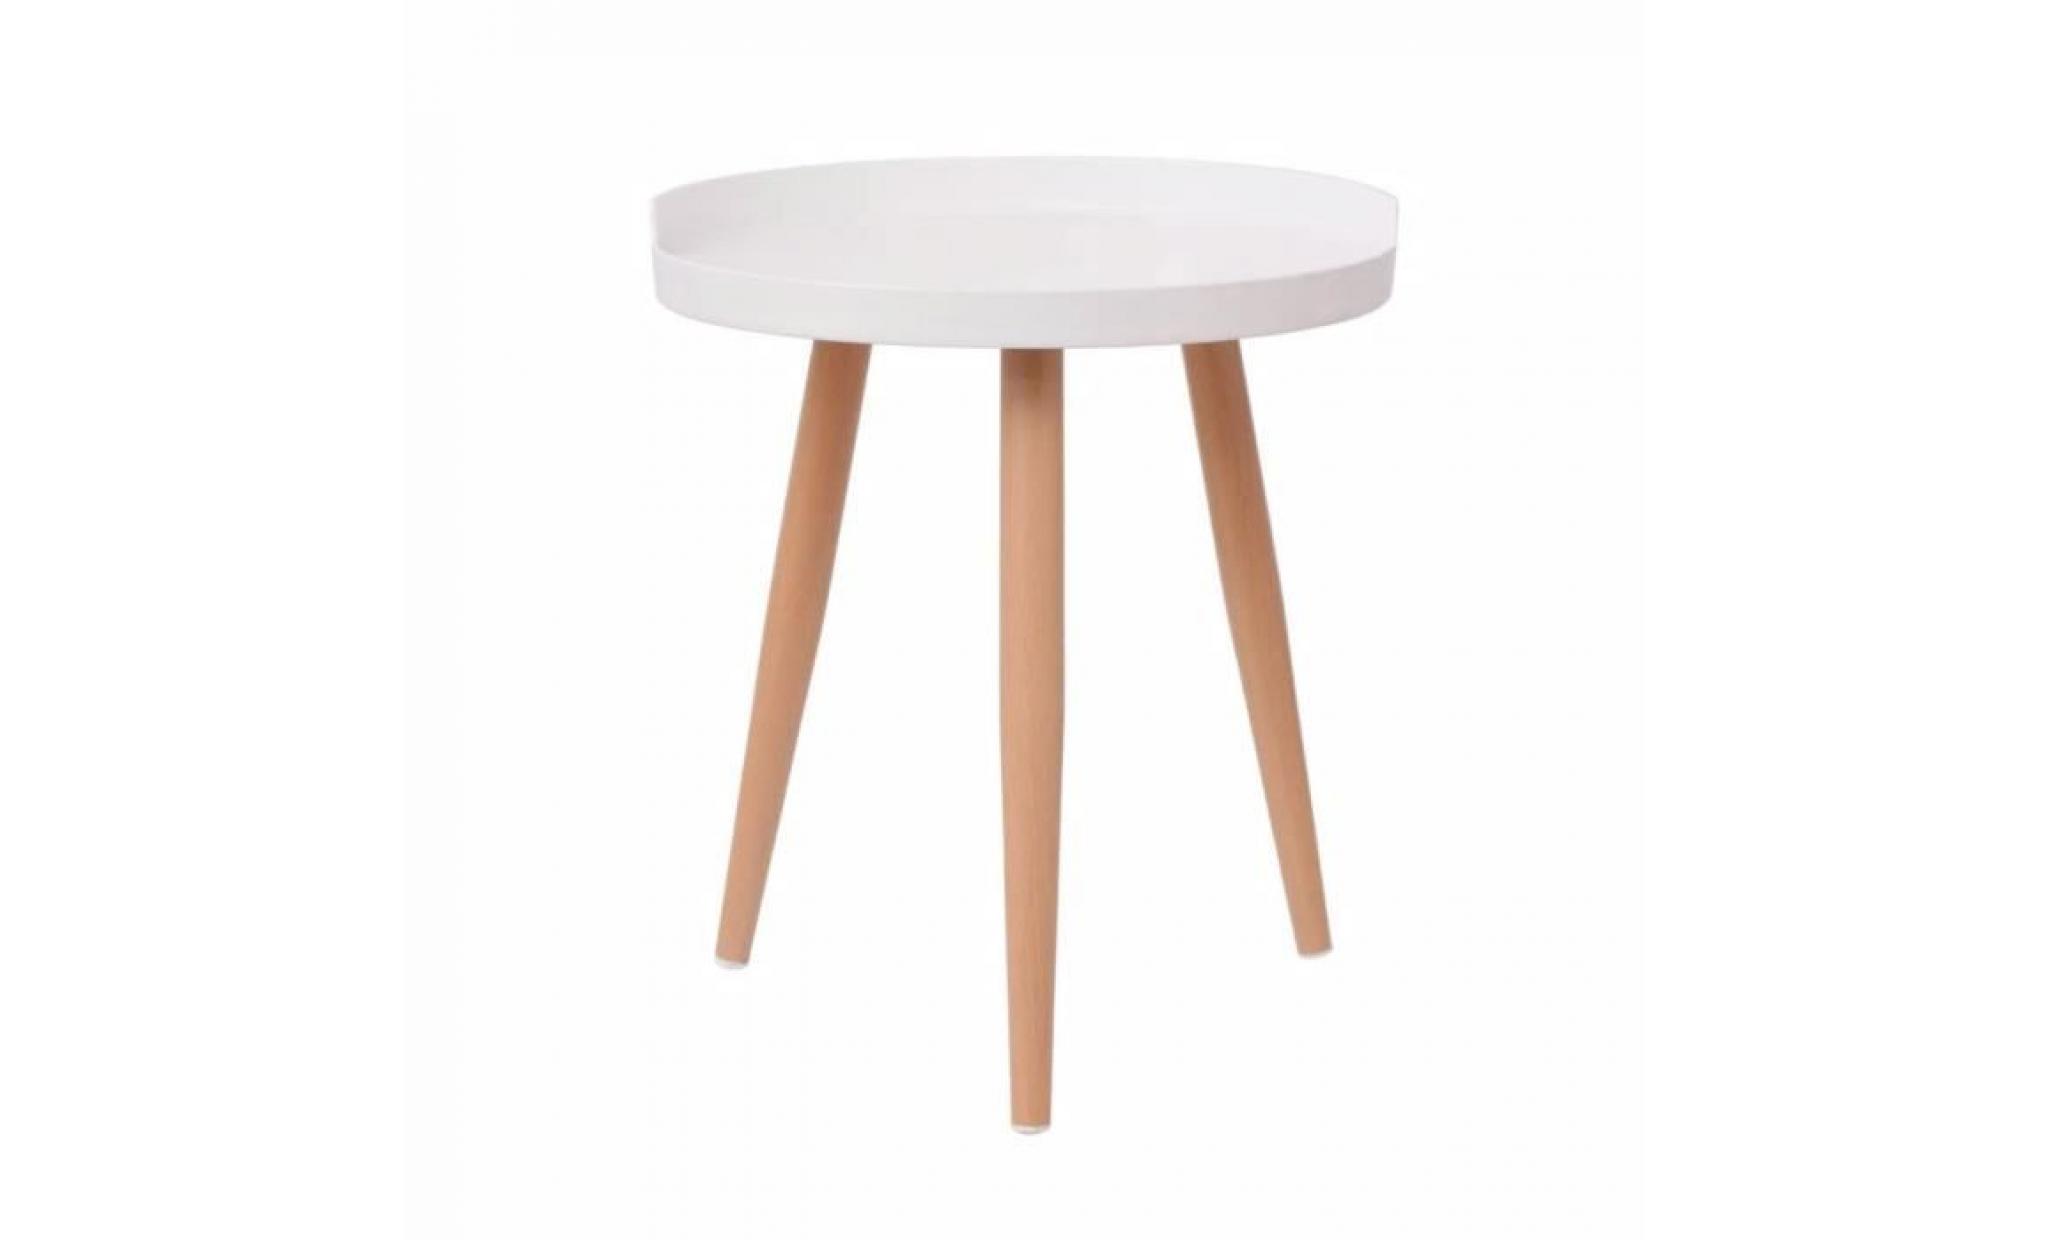 r18 cette table basse a plateau rond, avec son design elegant, pratique et durable, s'adaptera a n'importe quel espace d